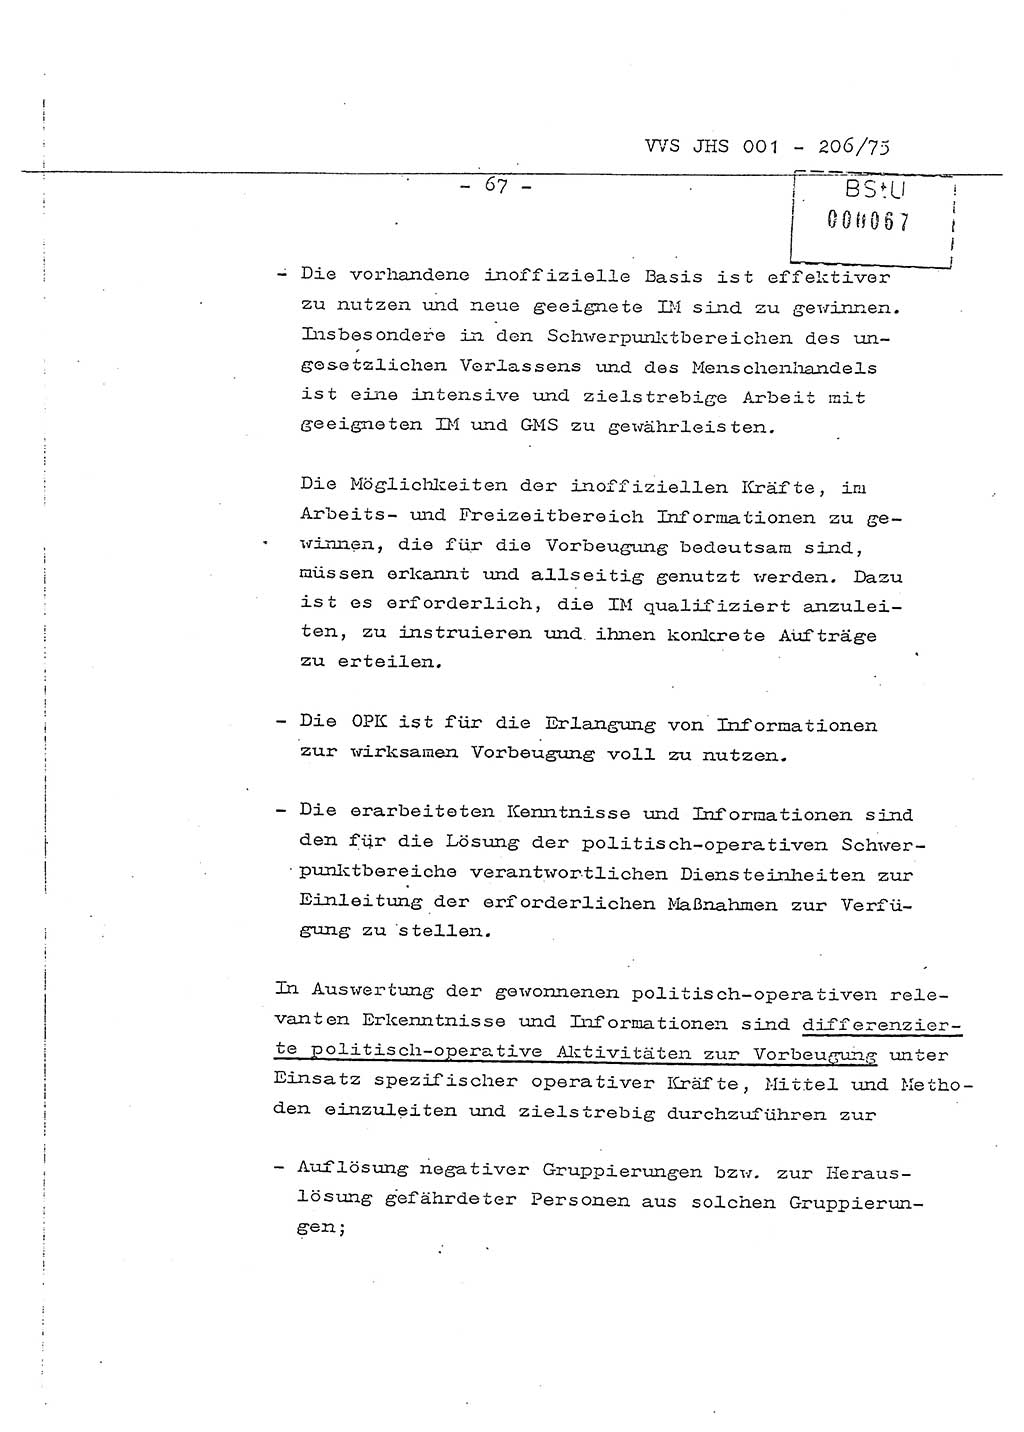 Dissertation Generalmajor Manfred Hummitzsch (Leiter der BV Leipzig), Generalmajor Heinz Fiedler (HA Ⅵ), Oberst Rolf Fister (HA Ⅸ), Ministerium für Staatssicherheit (MfS) [Deutsche Demokratische Republik (DDR)], Juristische Hochschule (JHS), Vertrauliche Verschlußsache (VVS) 001-206/75, Potsdam 1975, Seite 67 (Diss. MfS DDR JHS VVS 001-206/75 1975, S. 67)